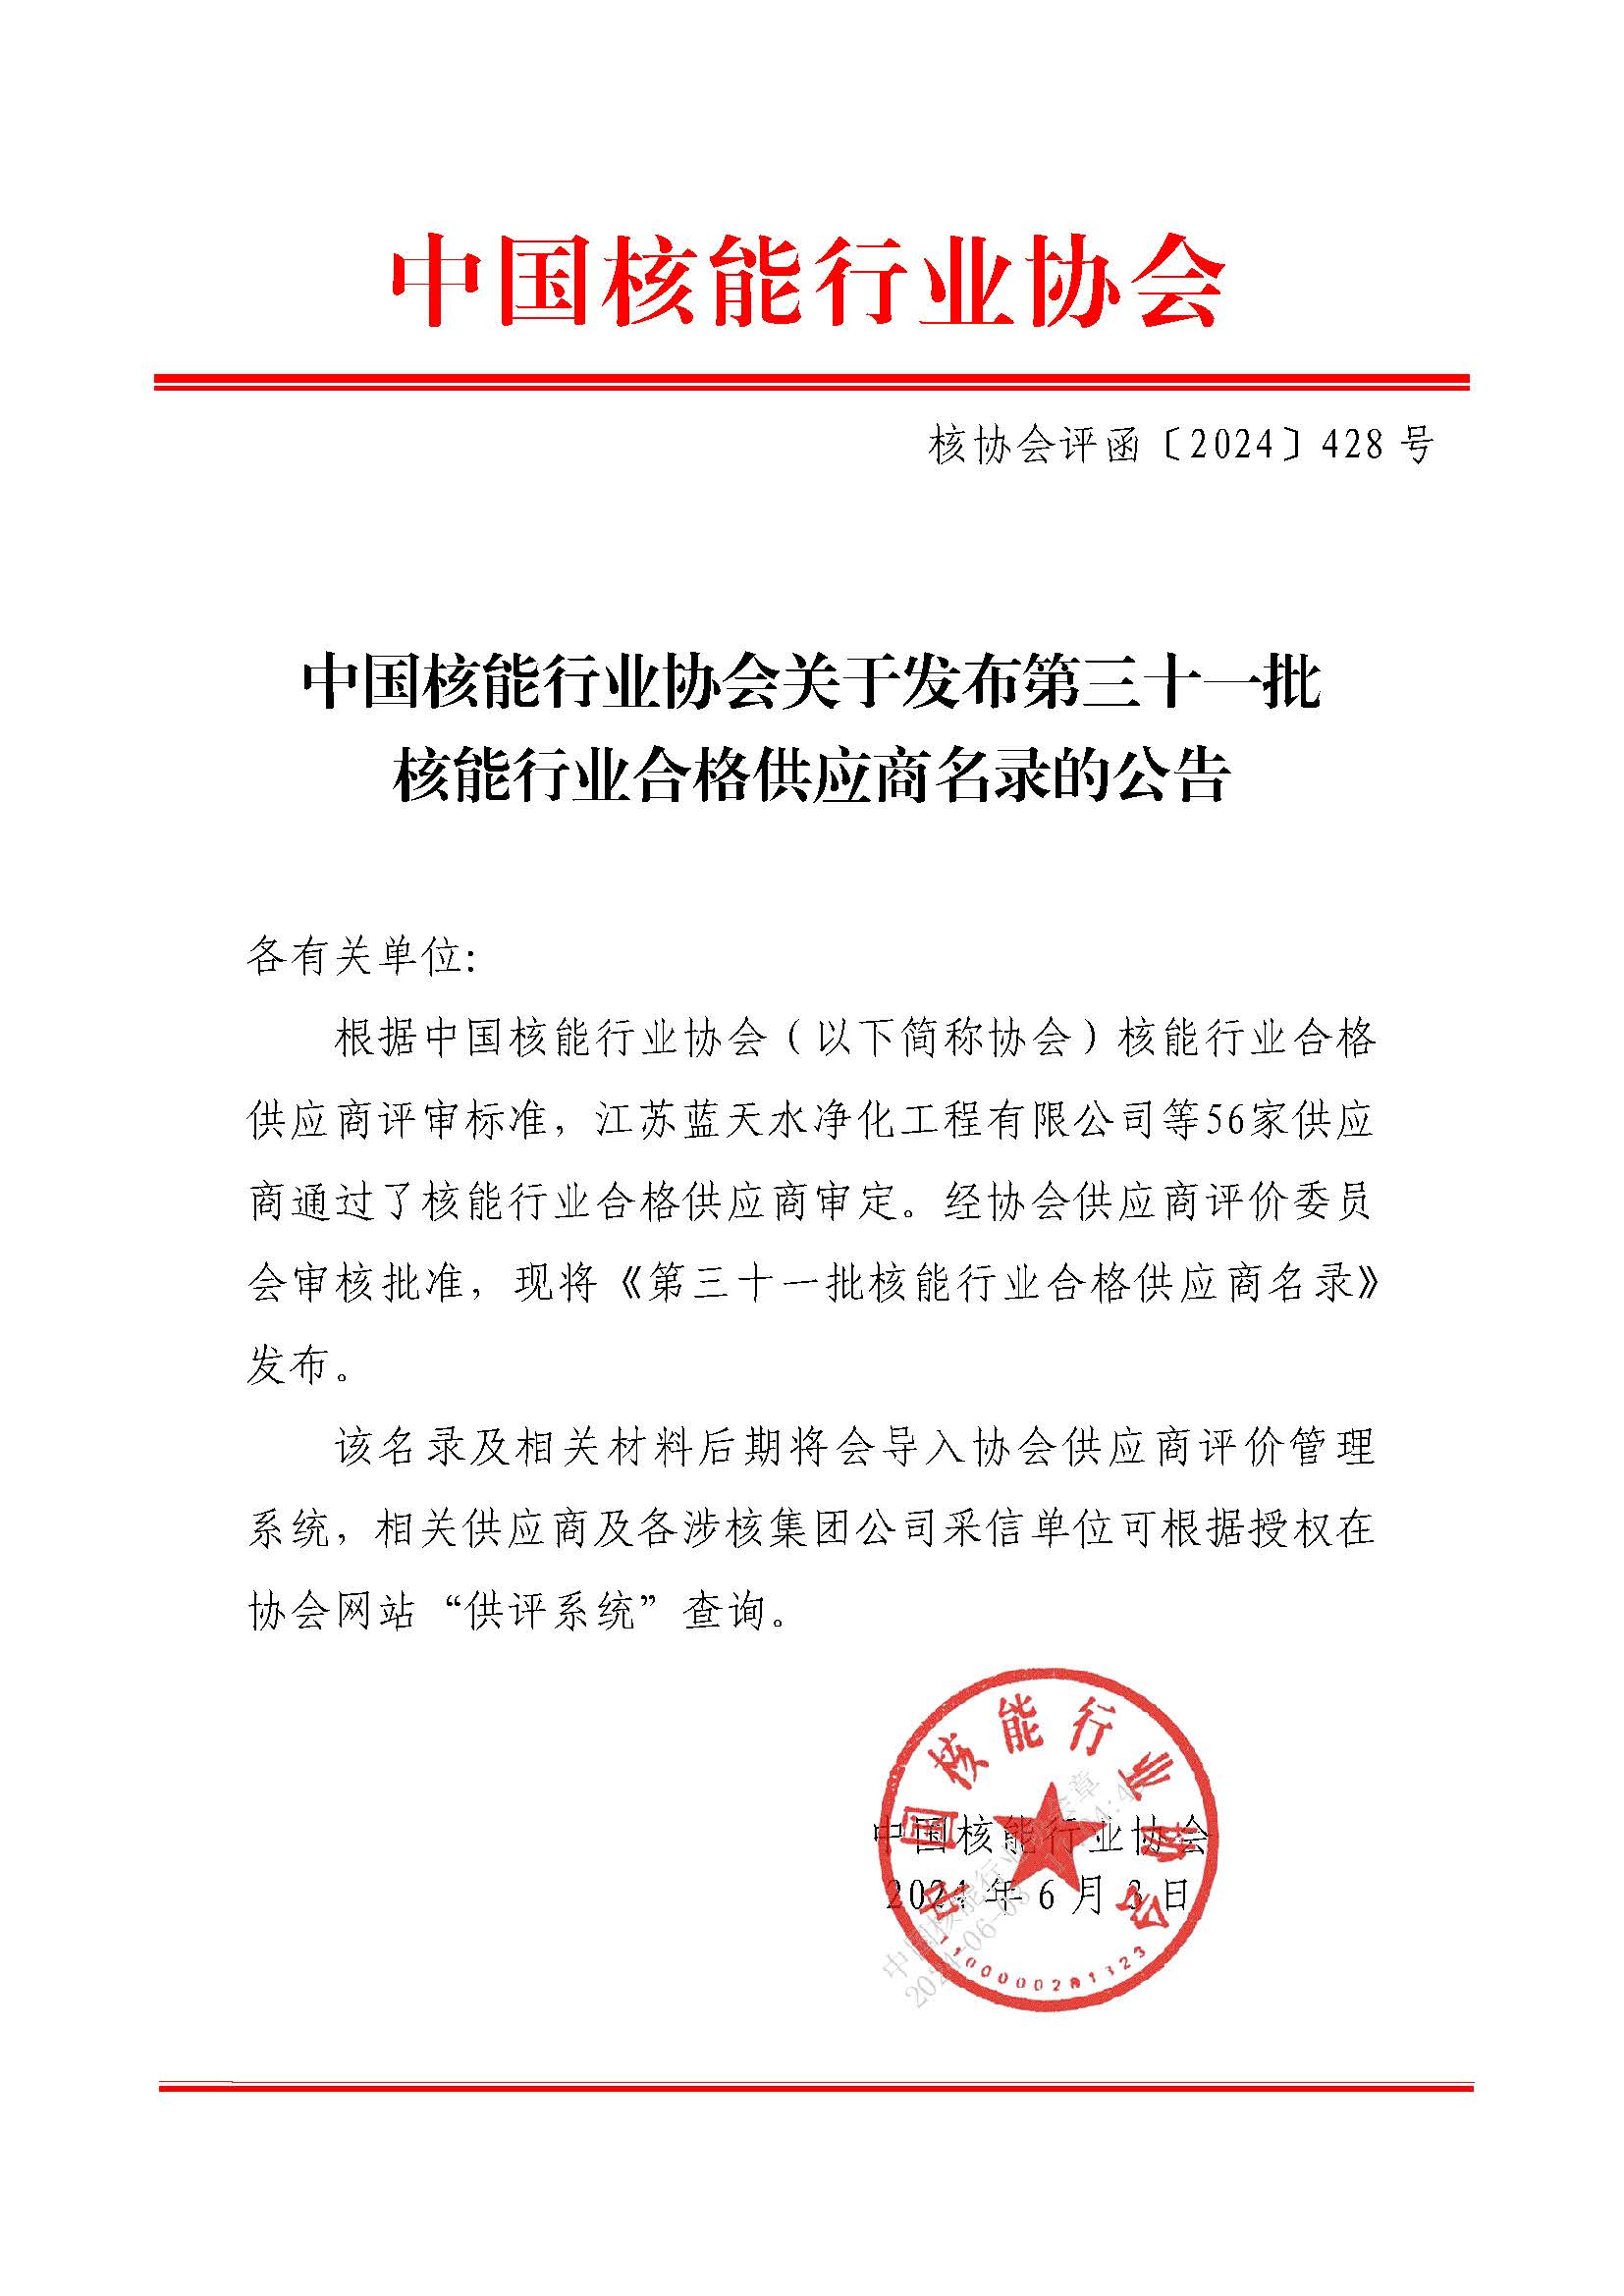 中国核能行业协会关于发布第三十一批核能行业合格供应商名录的公告_页面_1.jpg